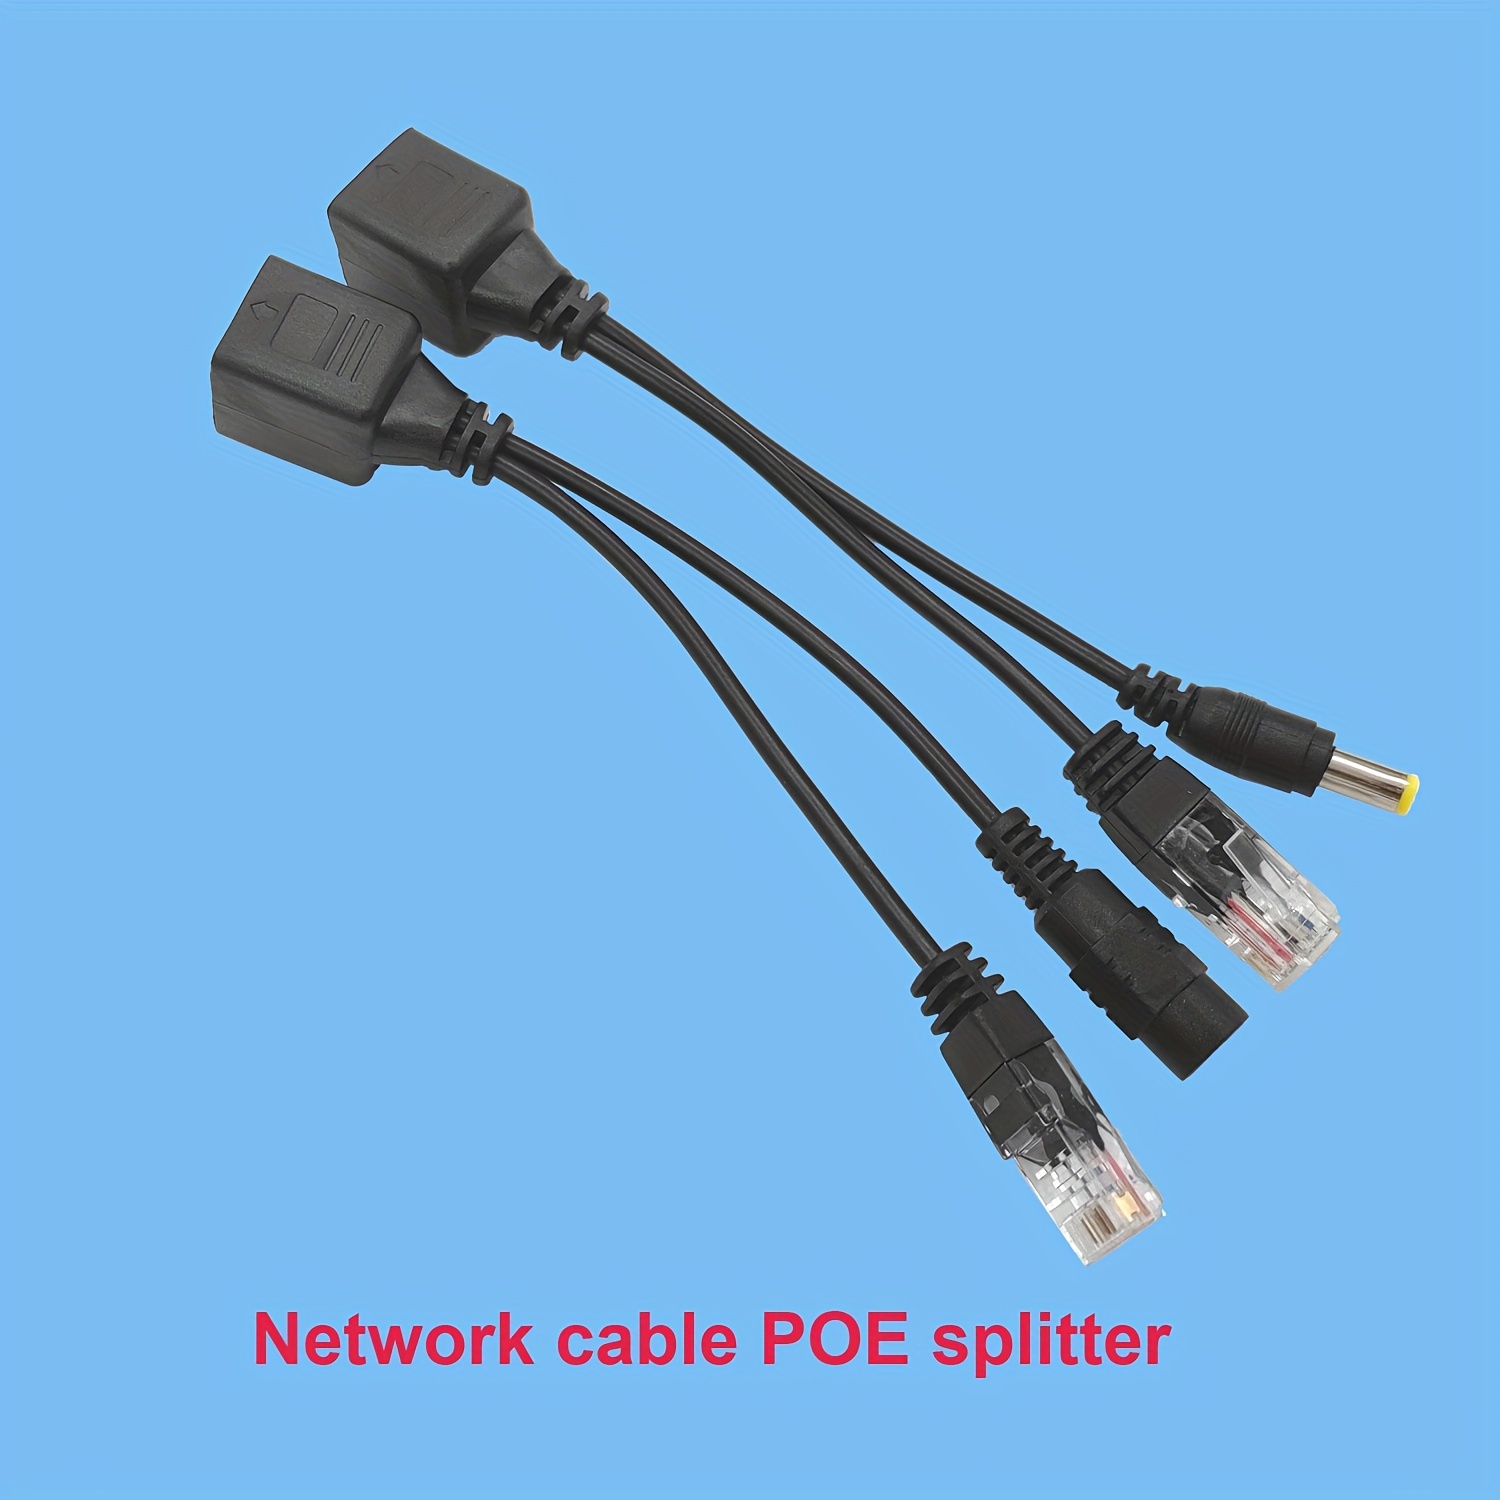 PoE RJ45 Splitter Kit for Ethernet Cable Sharing